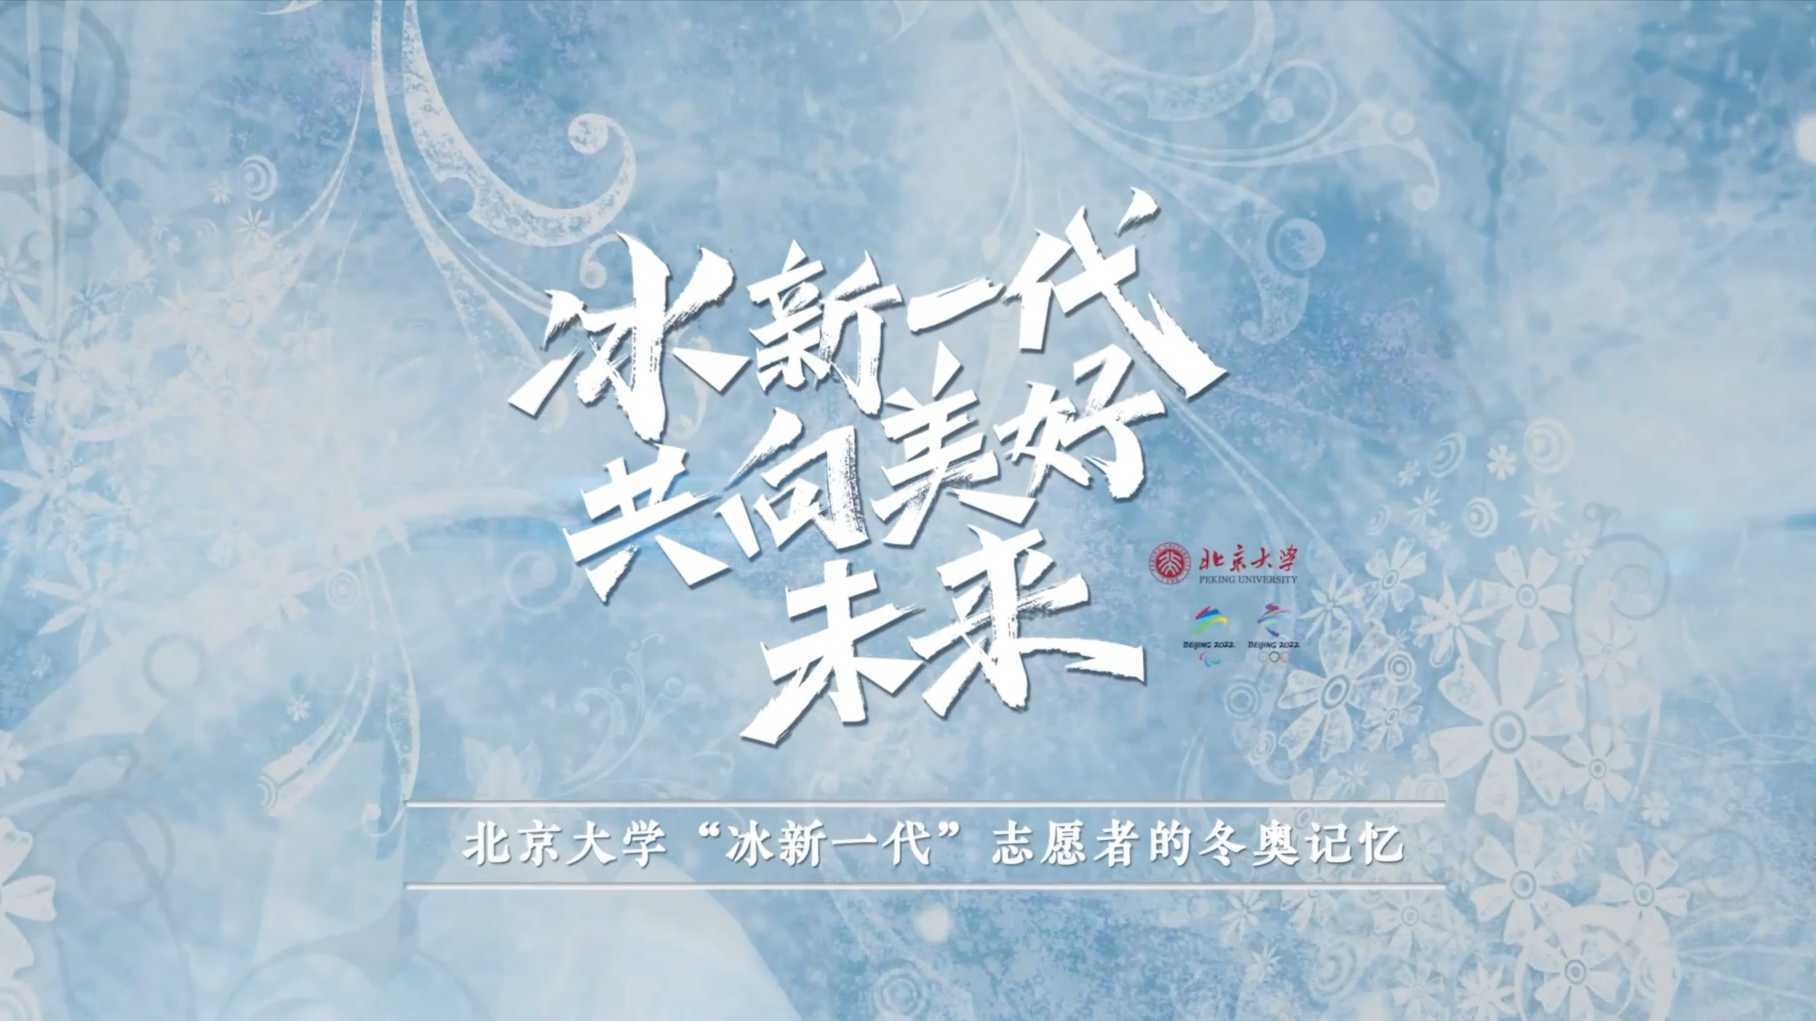 【活动】冰新一代共向美好未来，北京大学冬奥志愿者总结回顾视频